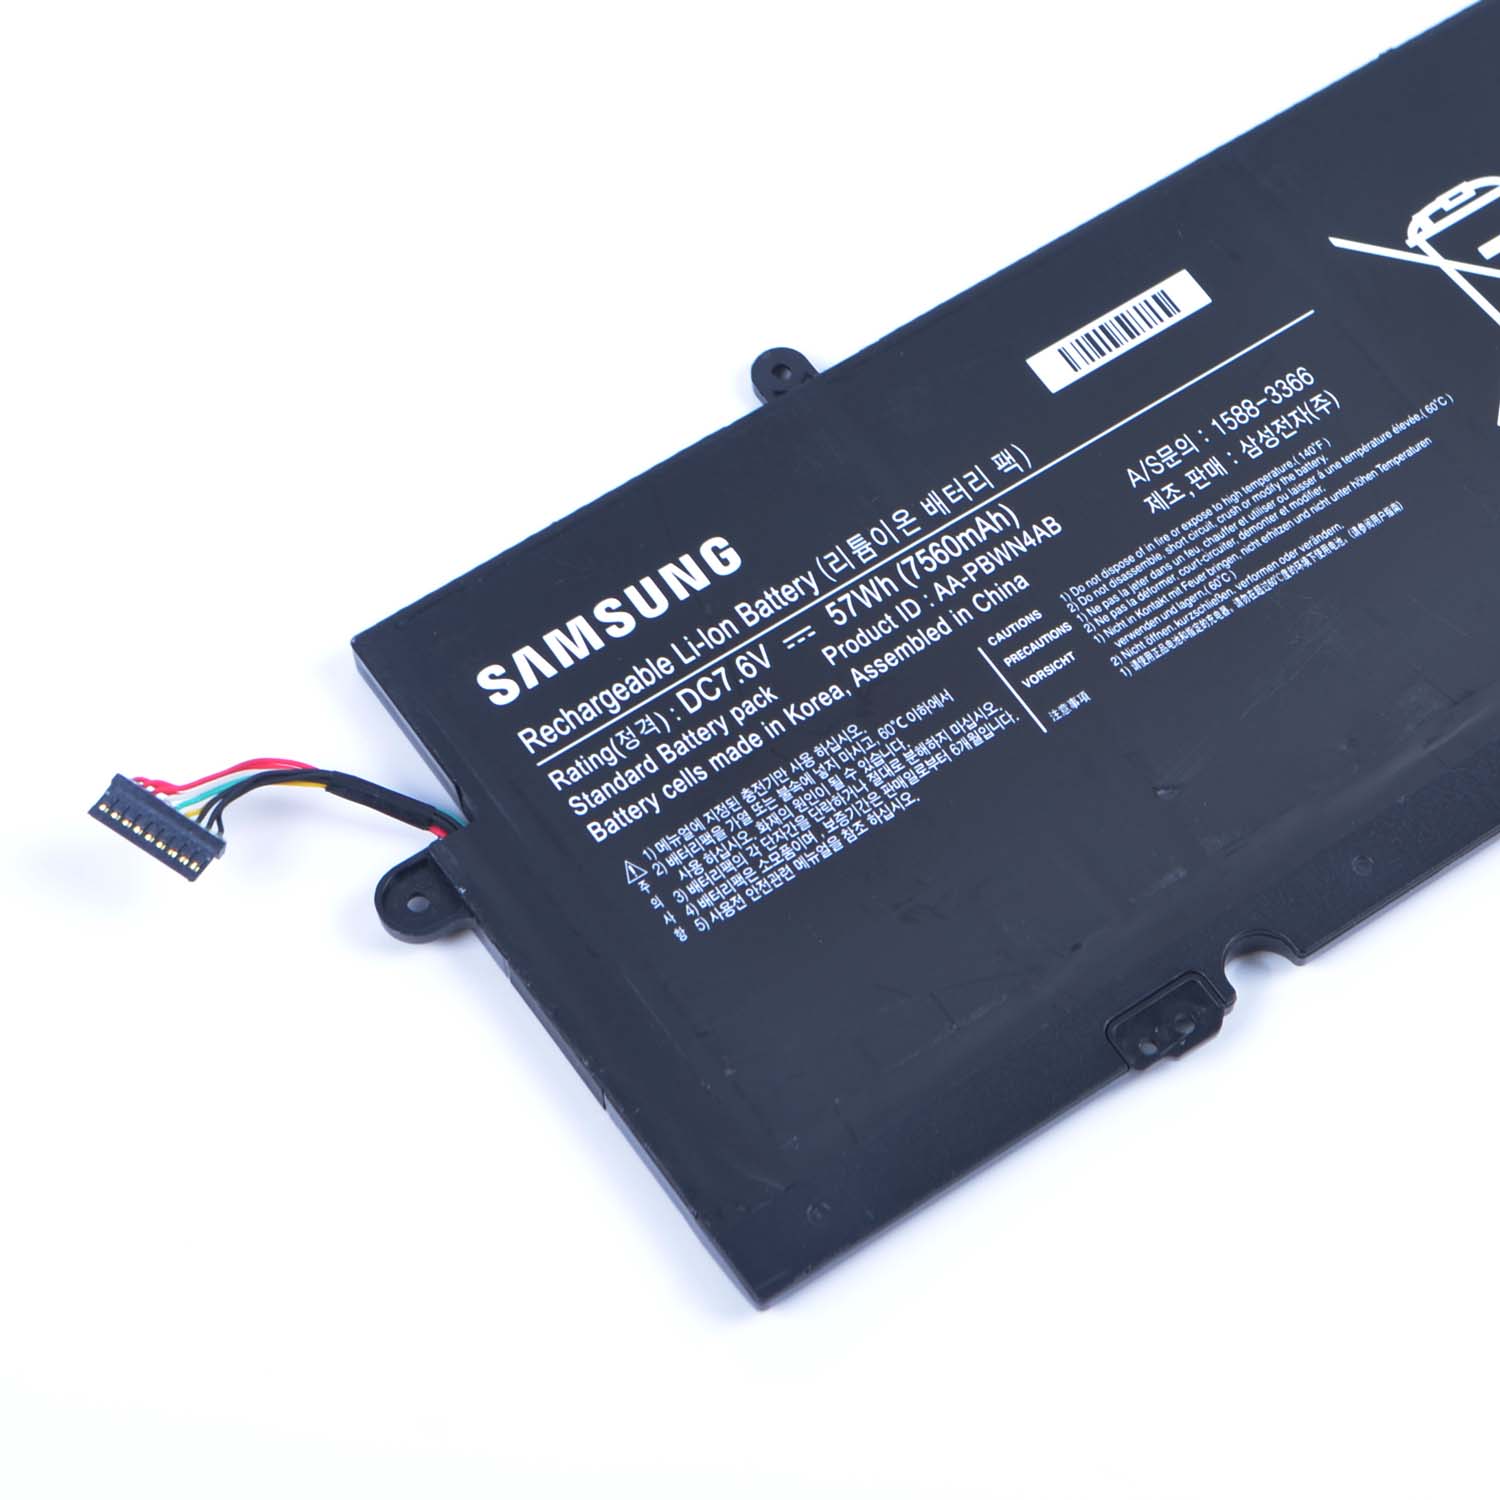 Samsung Samsung 740U3E-A01UB battery